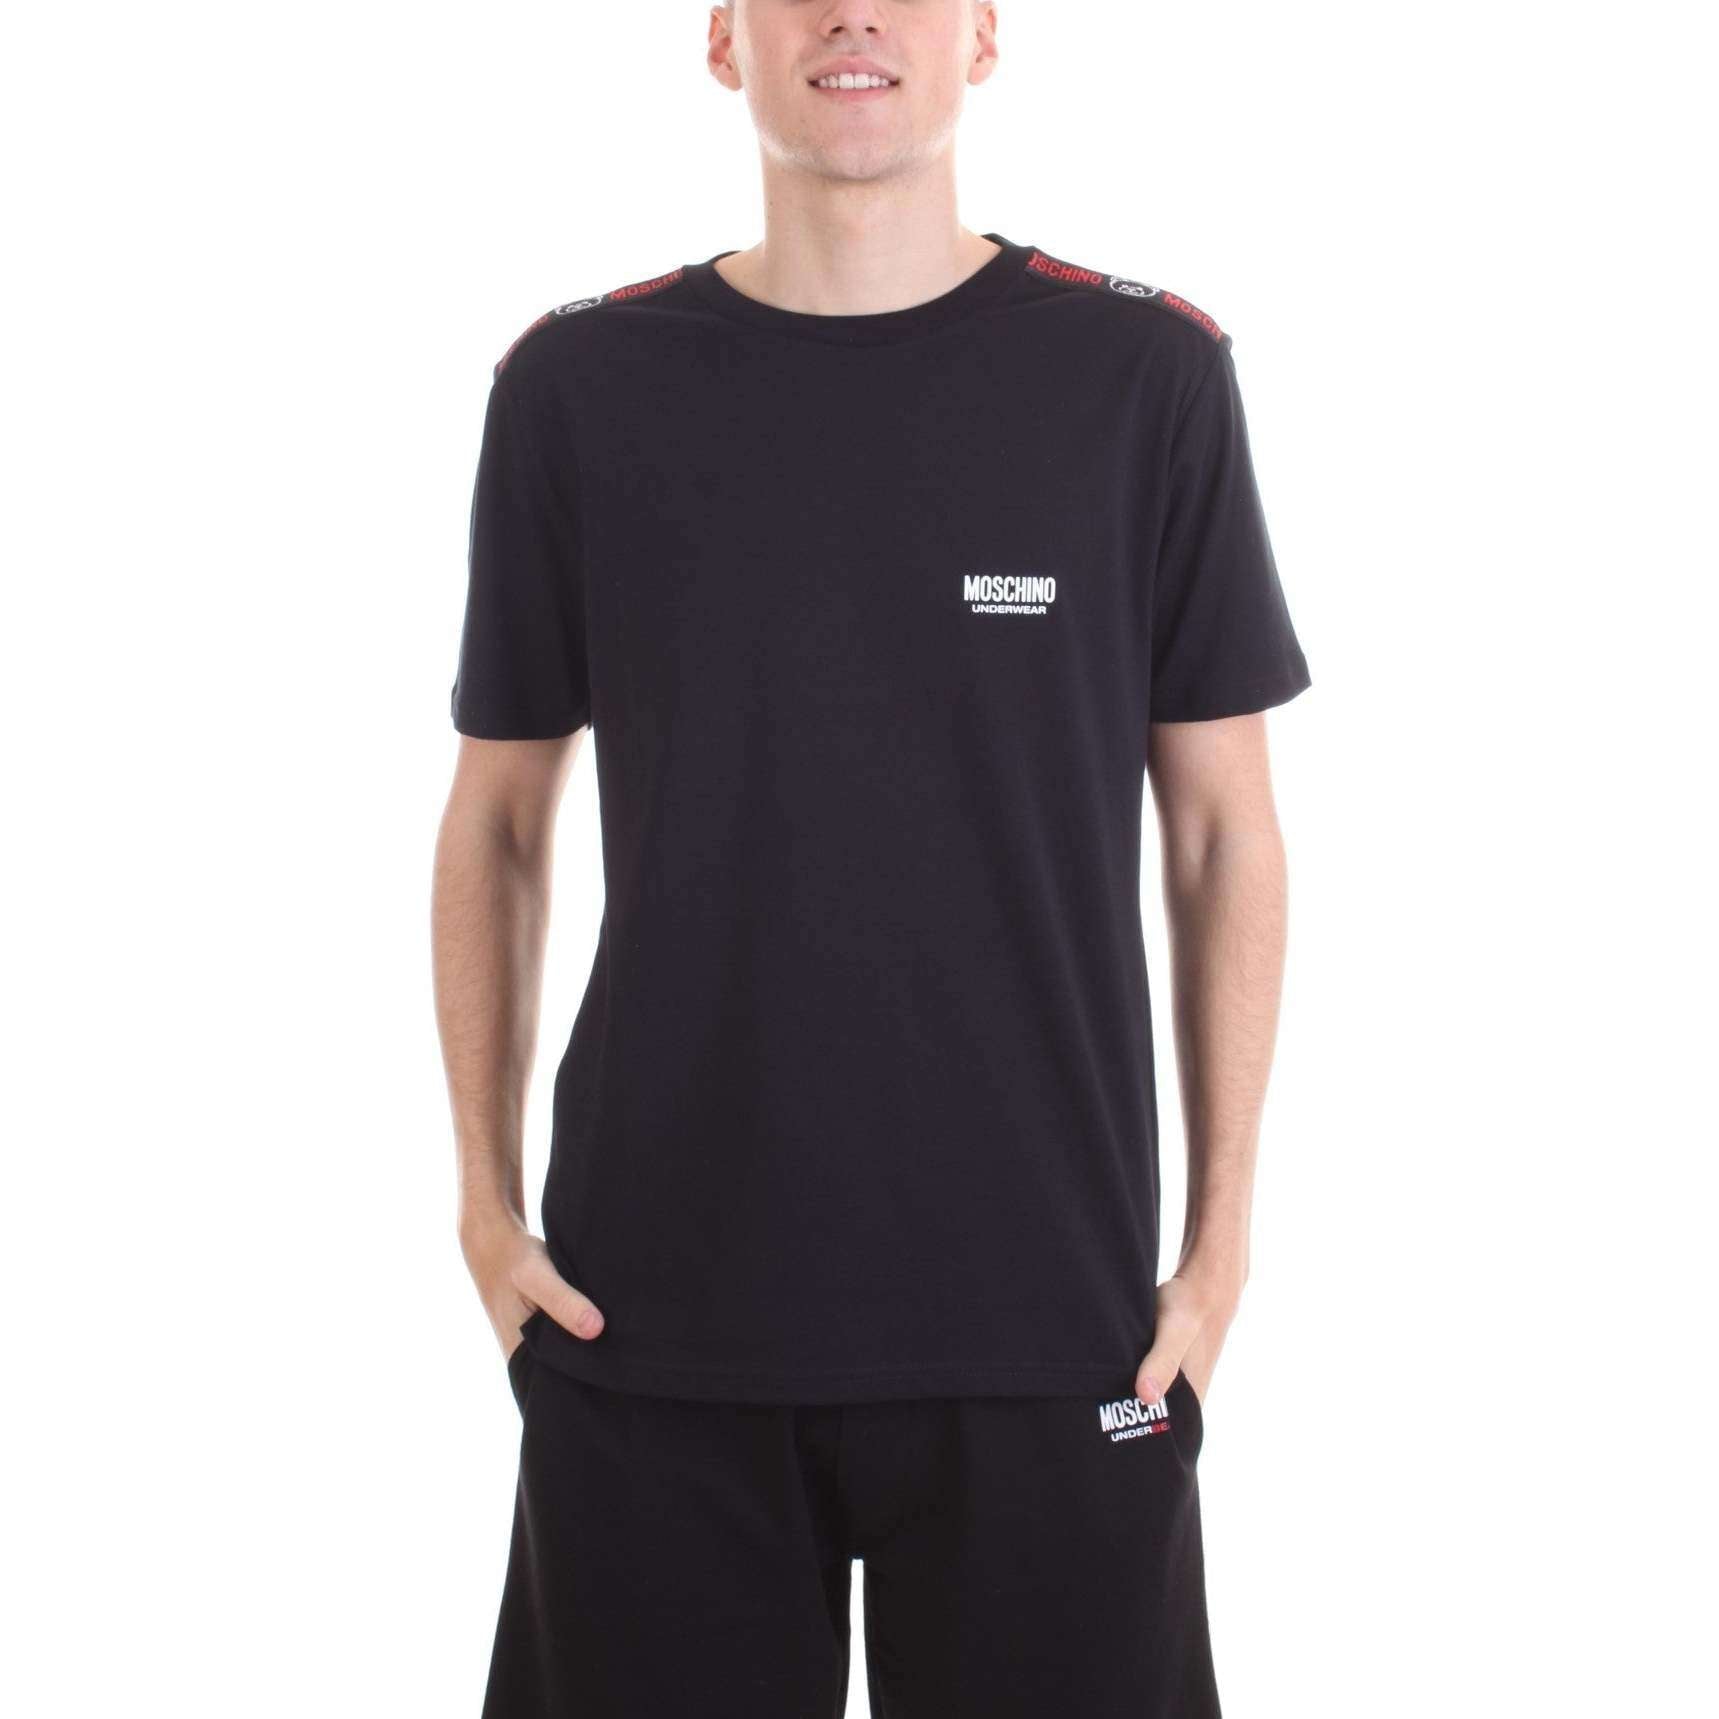 Moschino Uomo T-shirt 1930 8101-0555